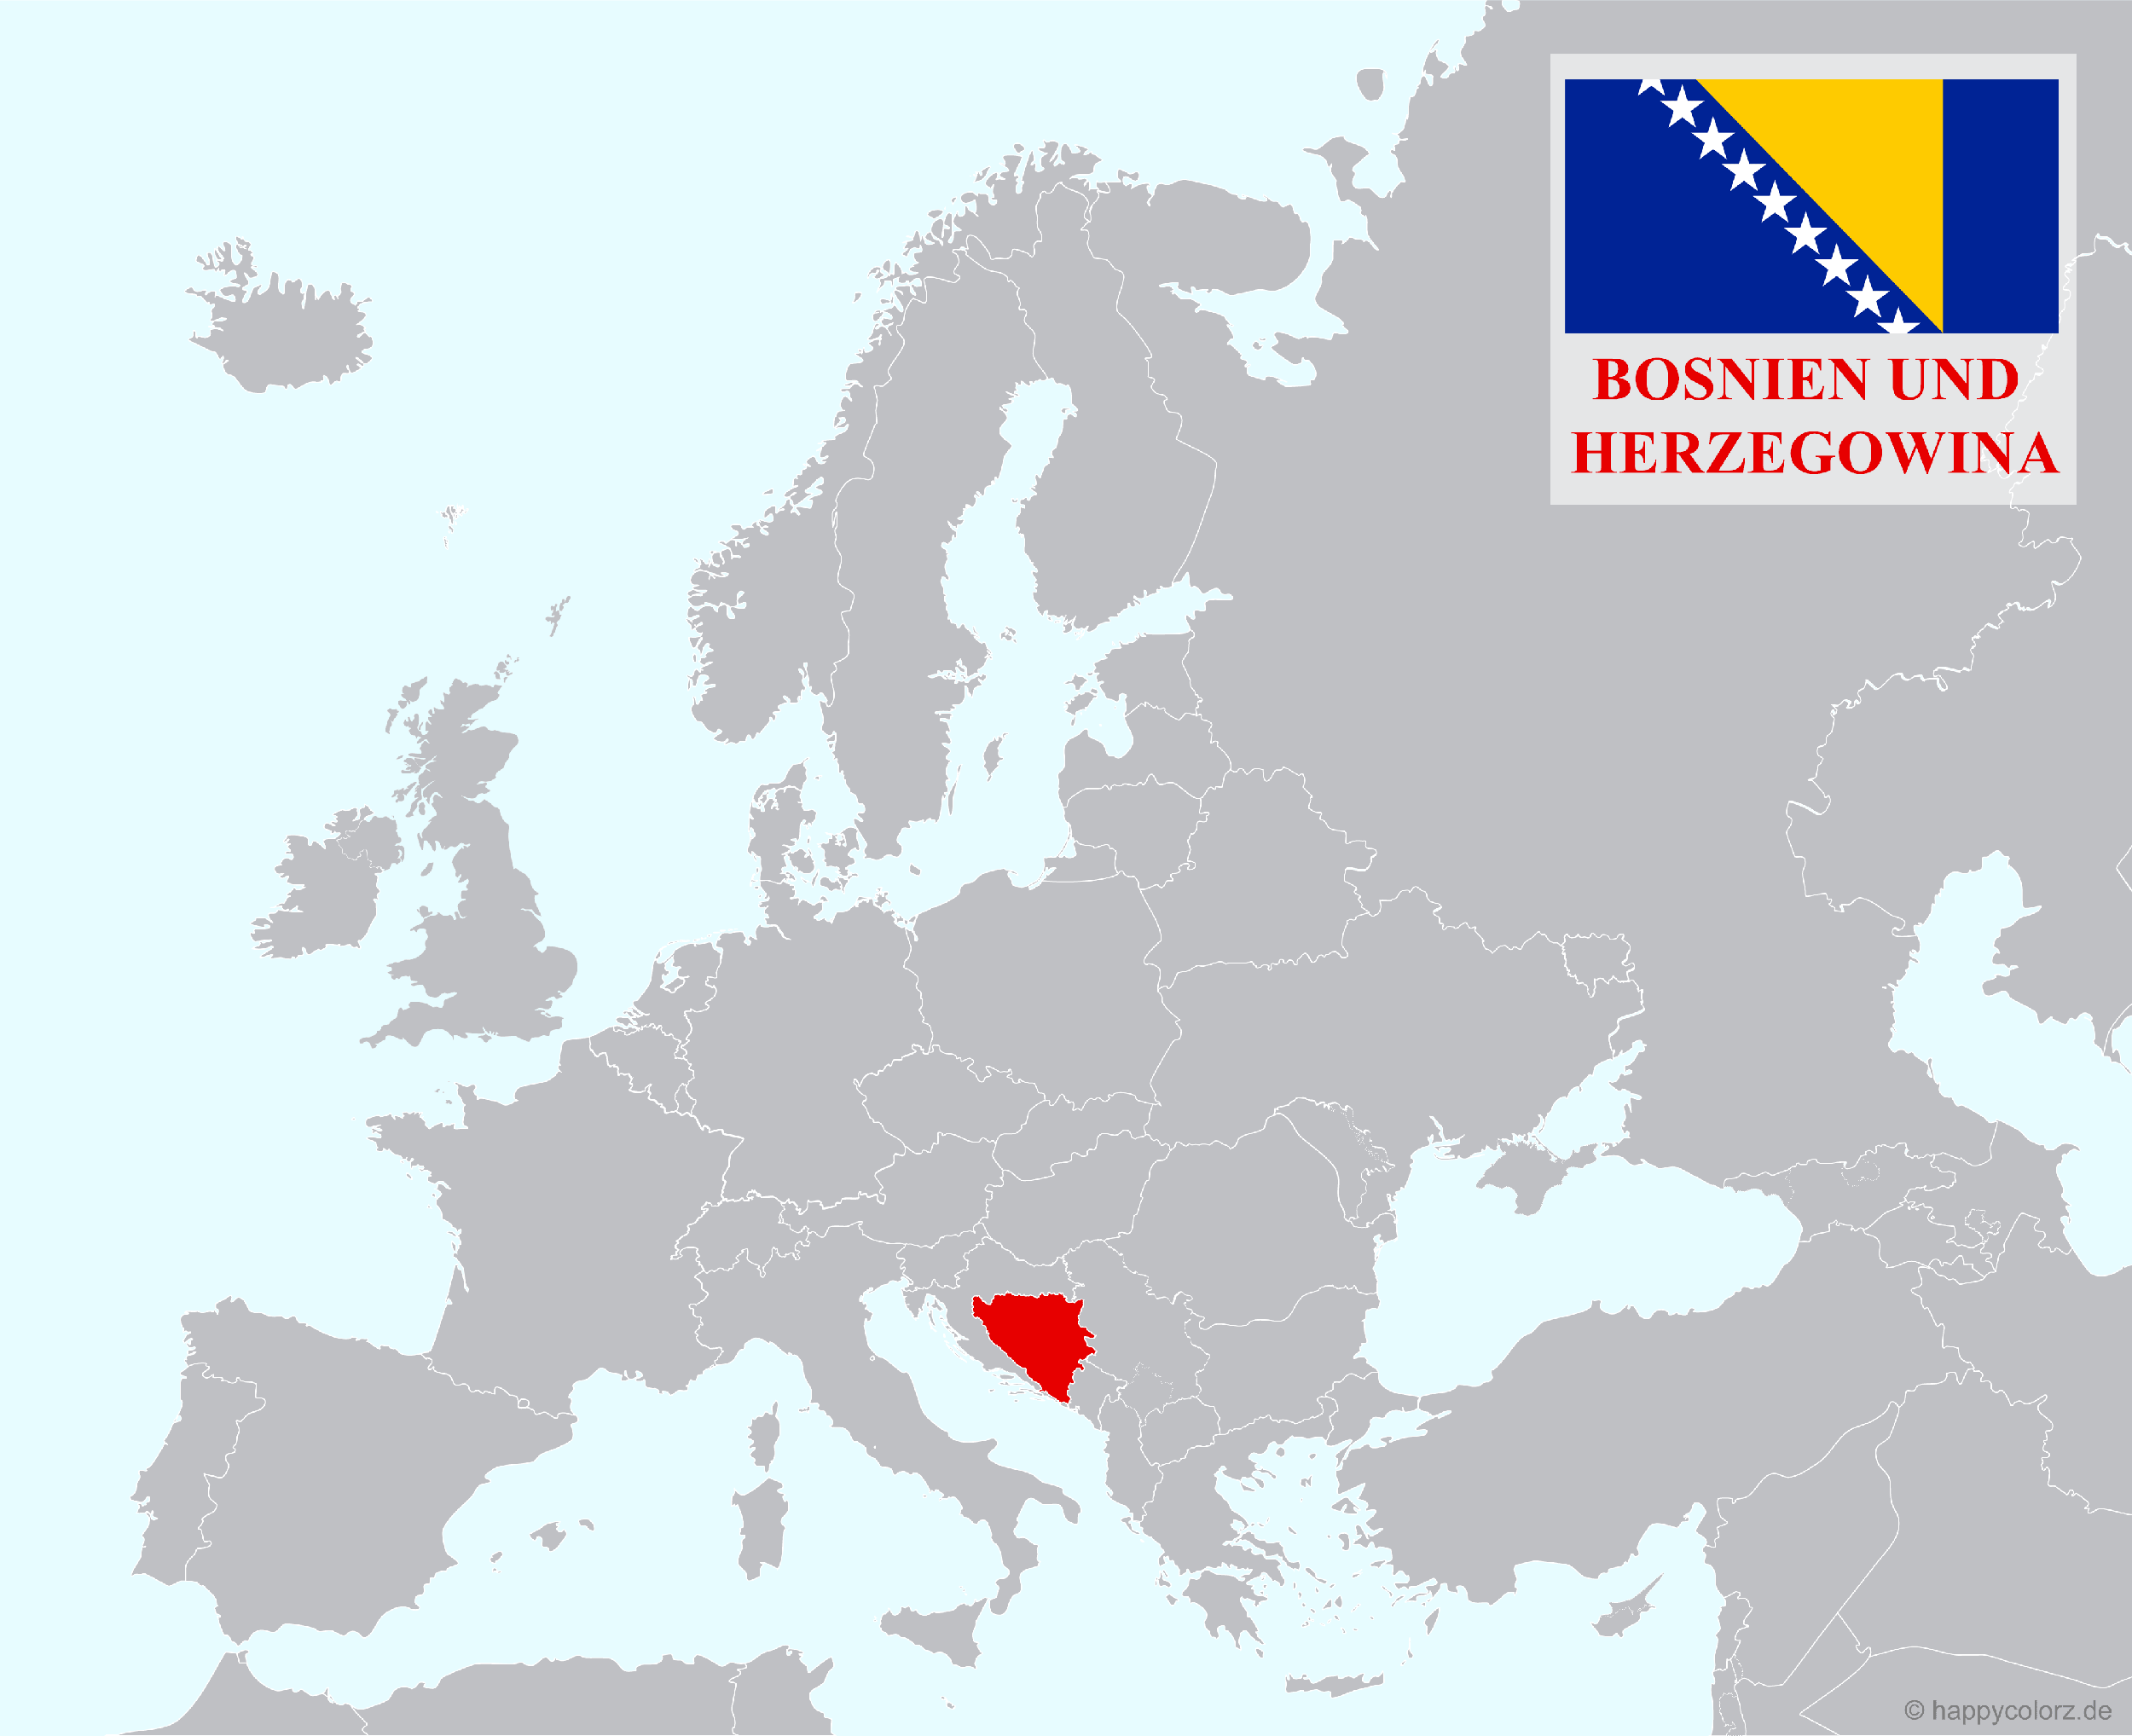 Europakarte mit Bosnien und Herzegowina als hervorgehobenes Land